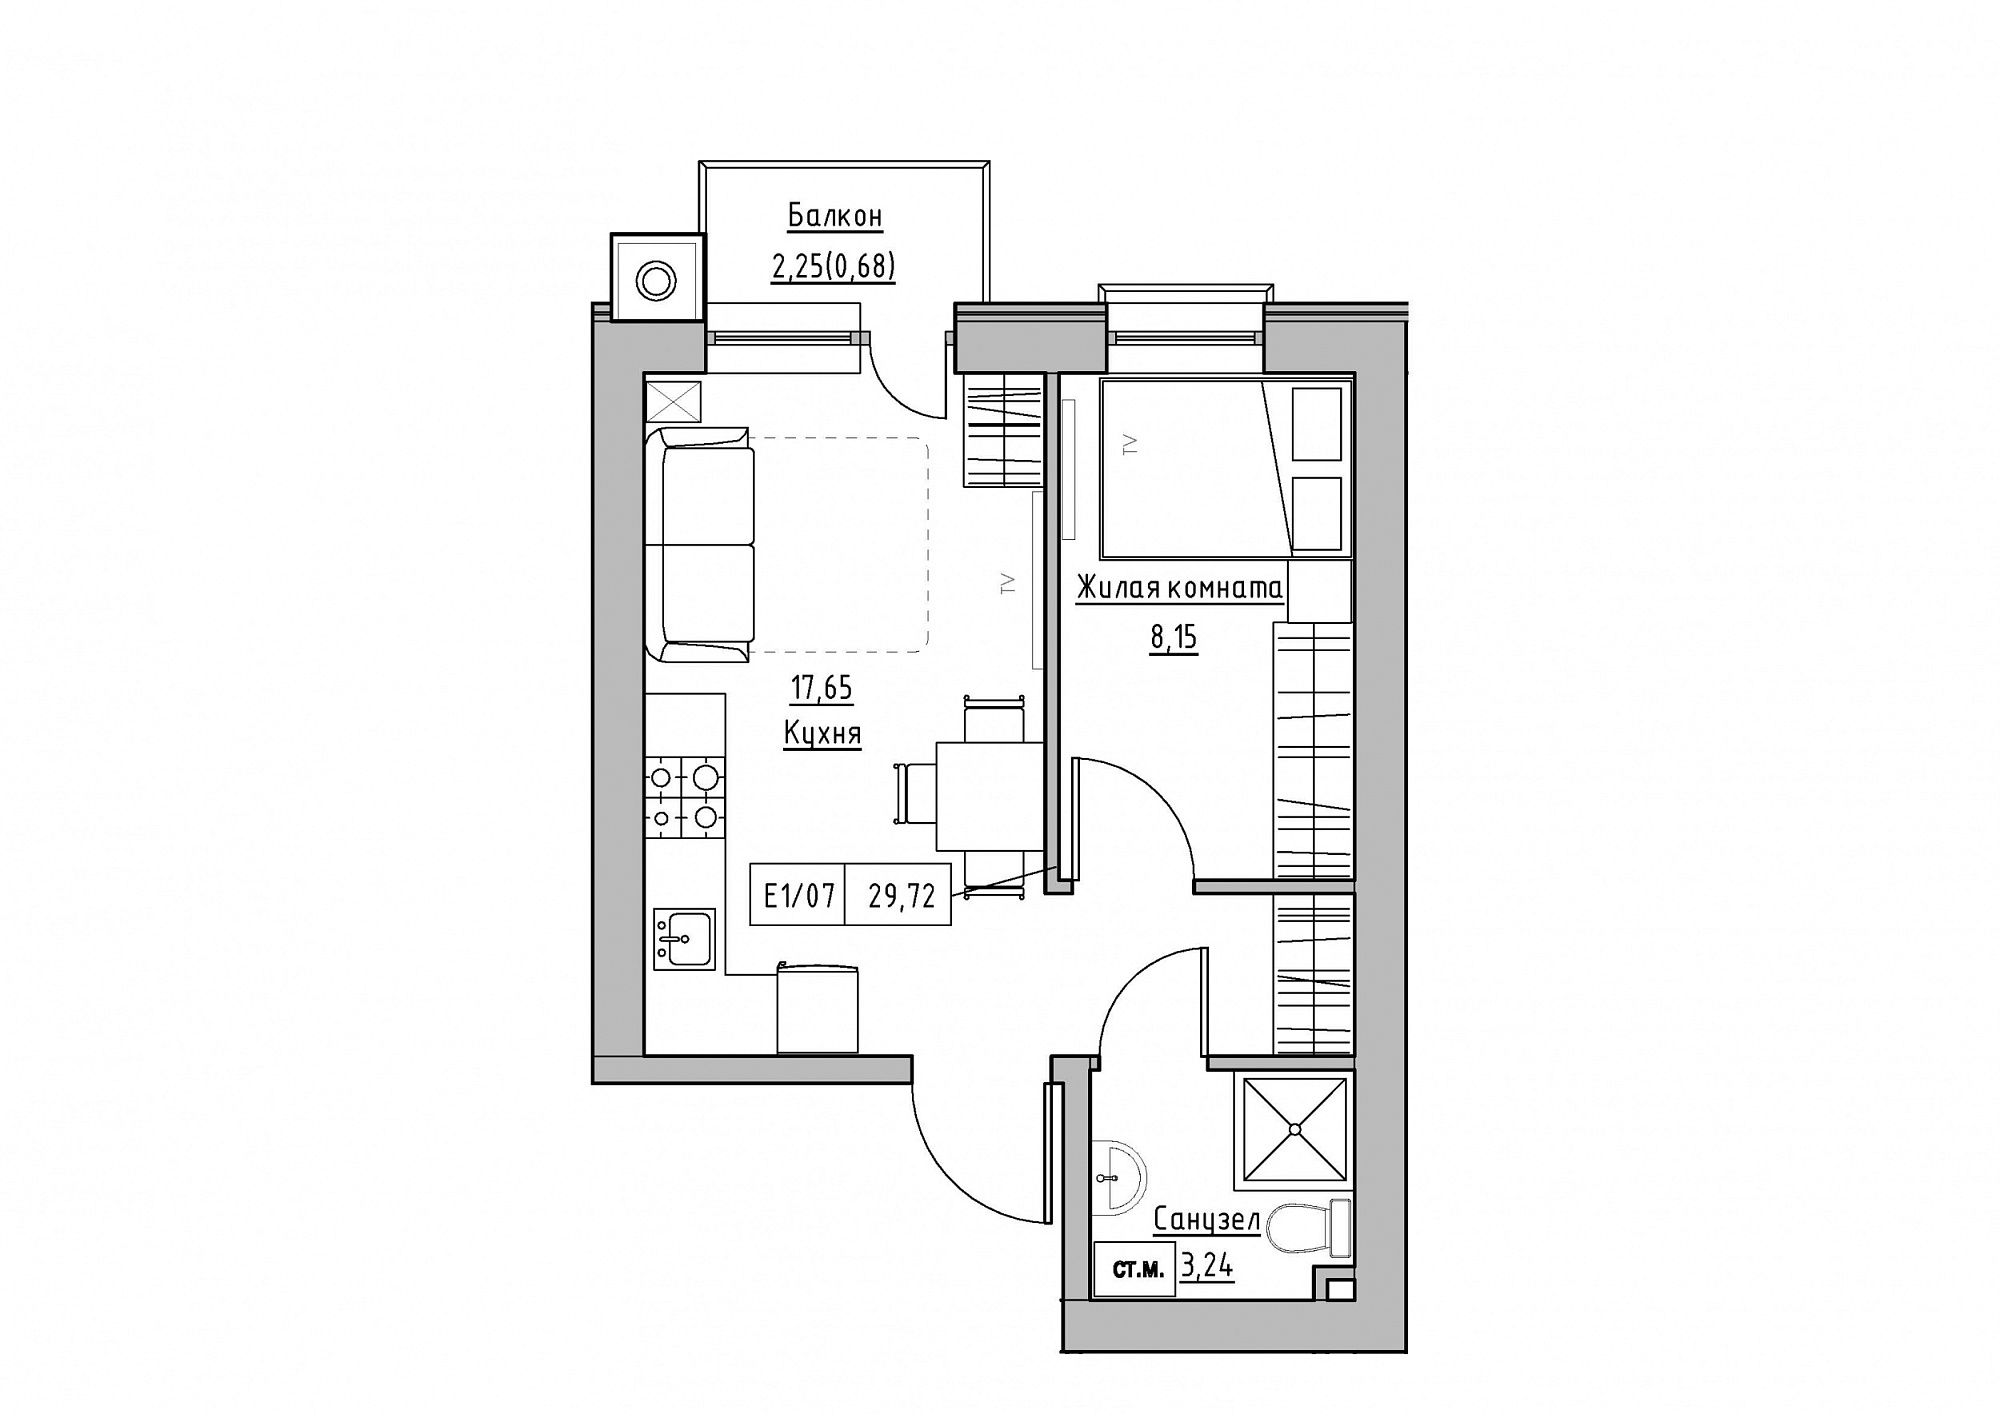 Планировка 1-к квартира площей 29.72м2, KS-012-04/0003.